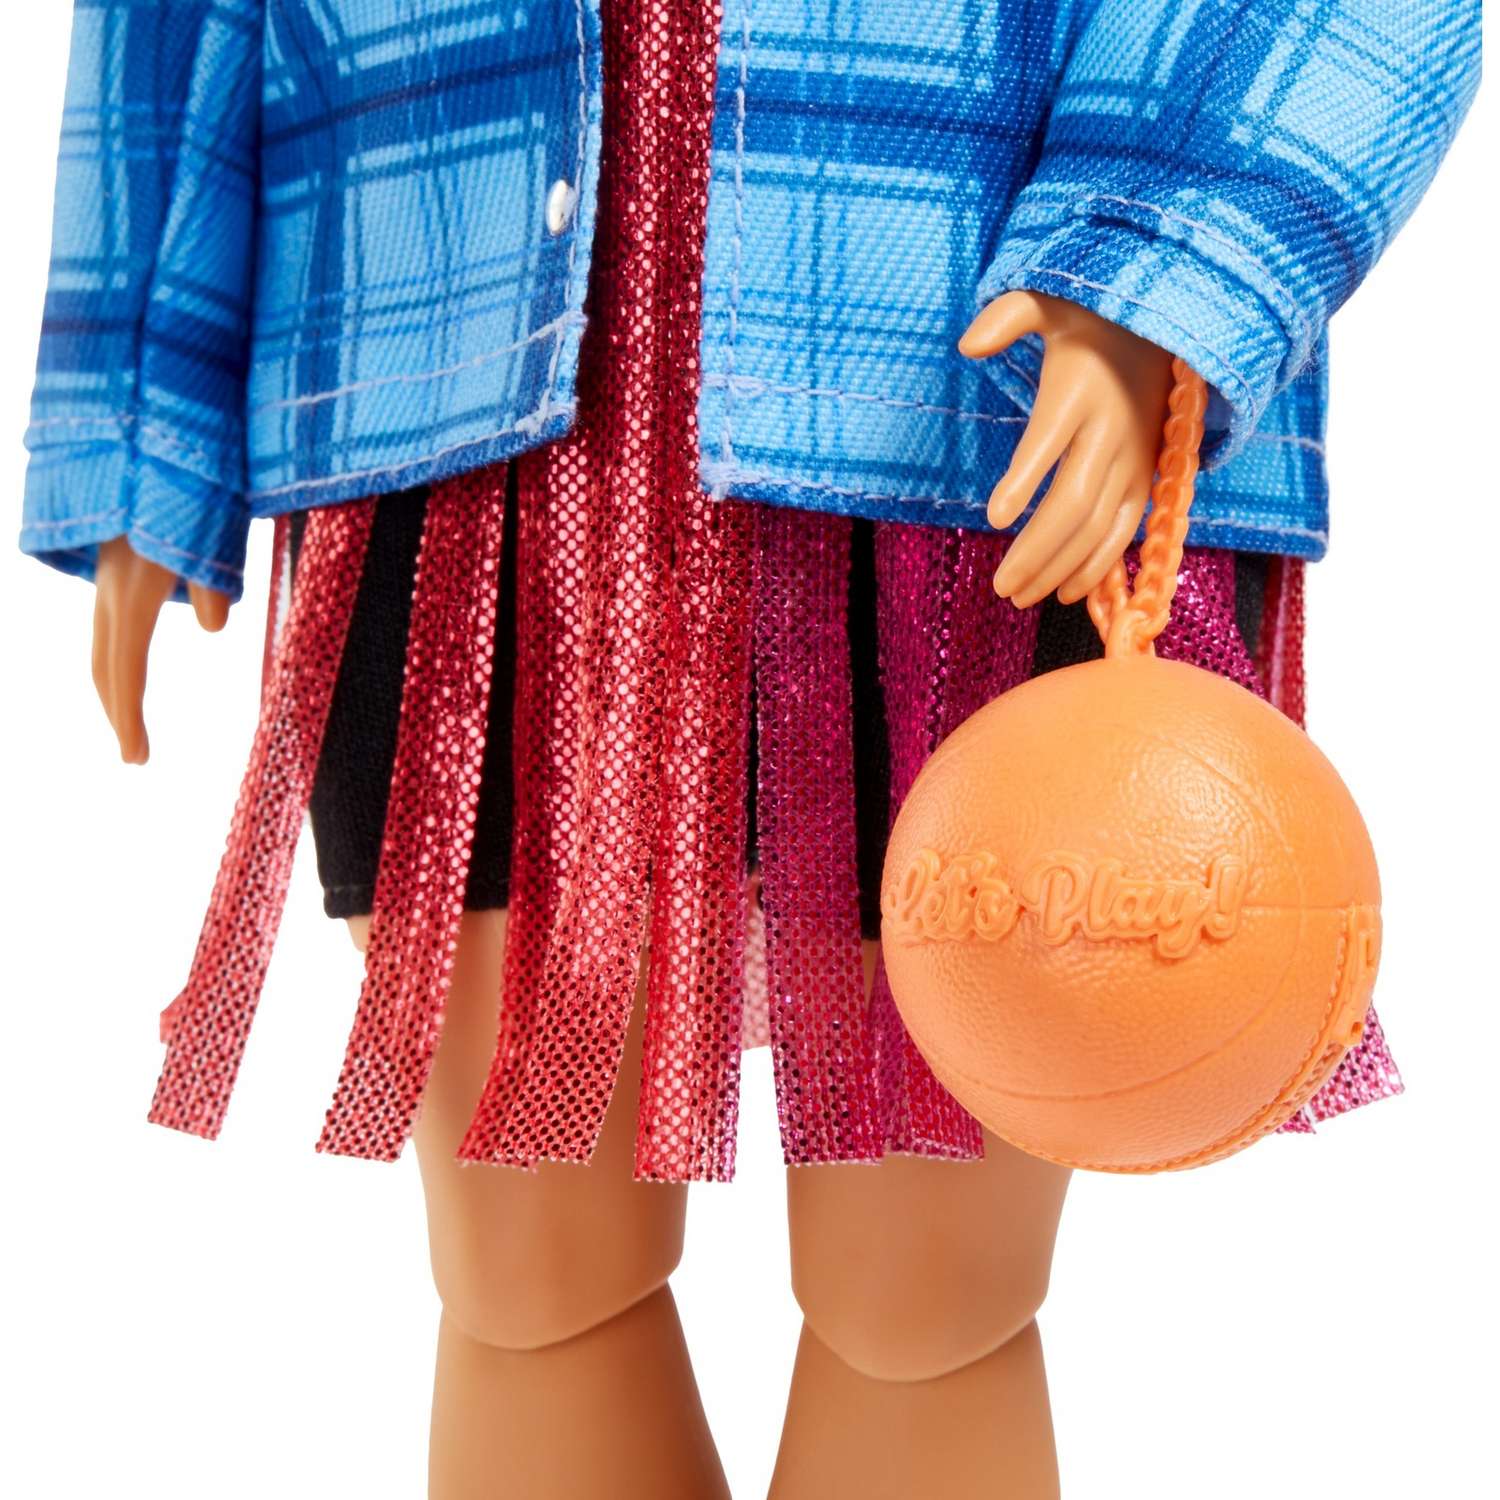 Кукла Barbie Экстра в платье баскетбольный стиль HDJ46 HDJ46 - фото 8